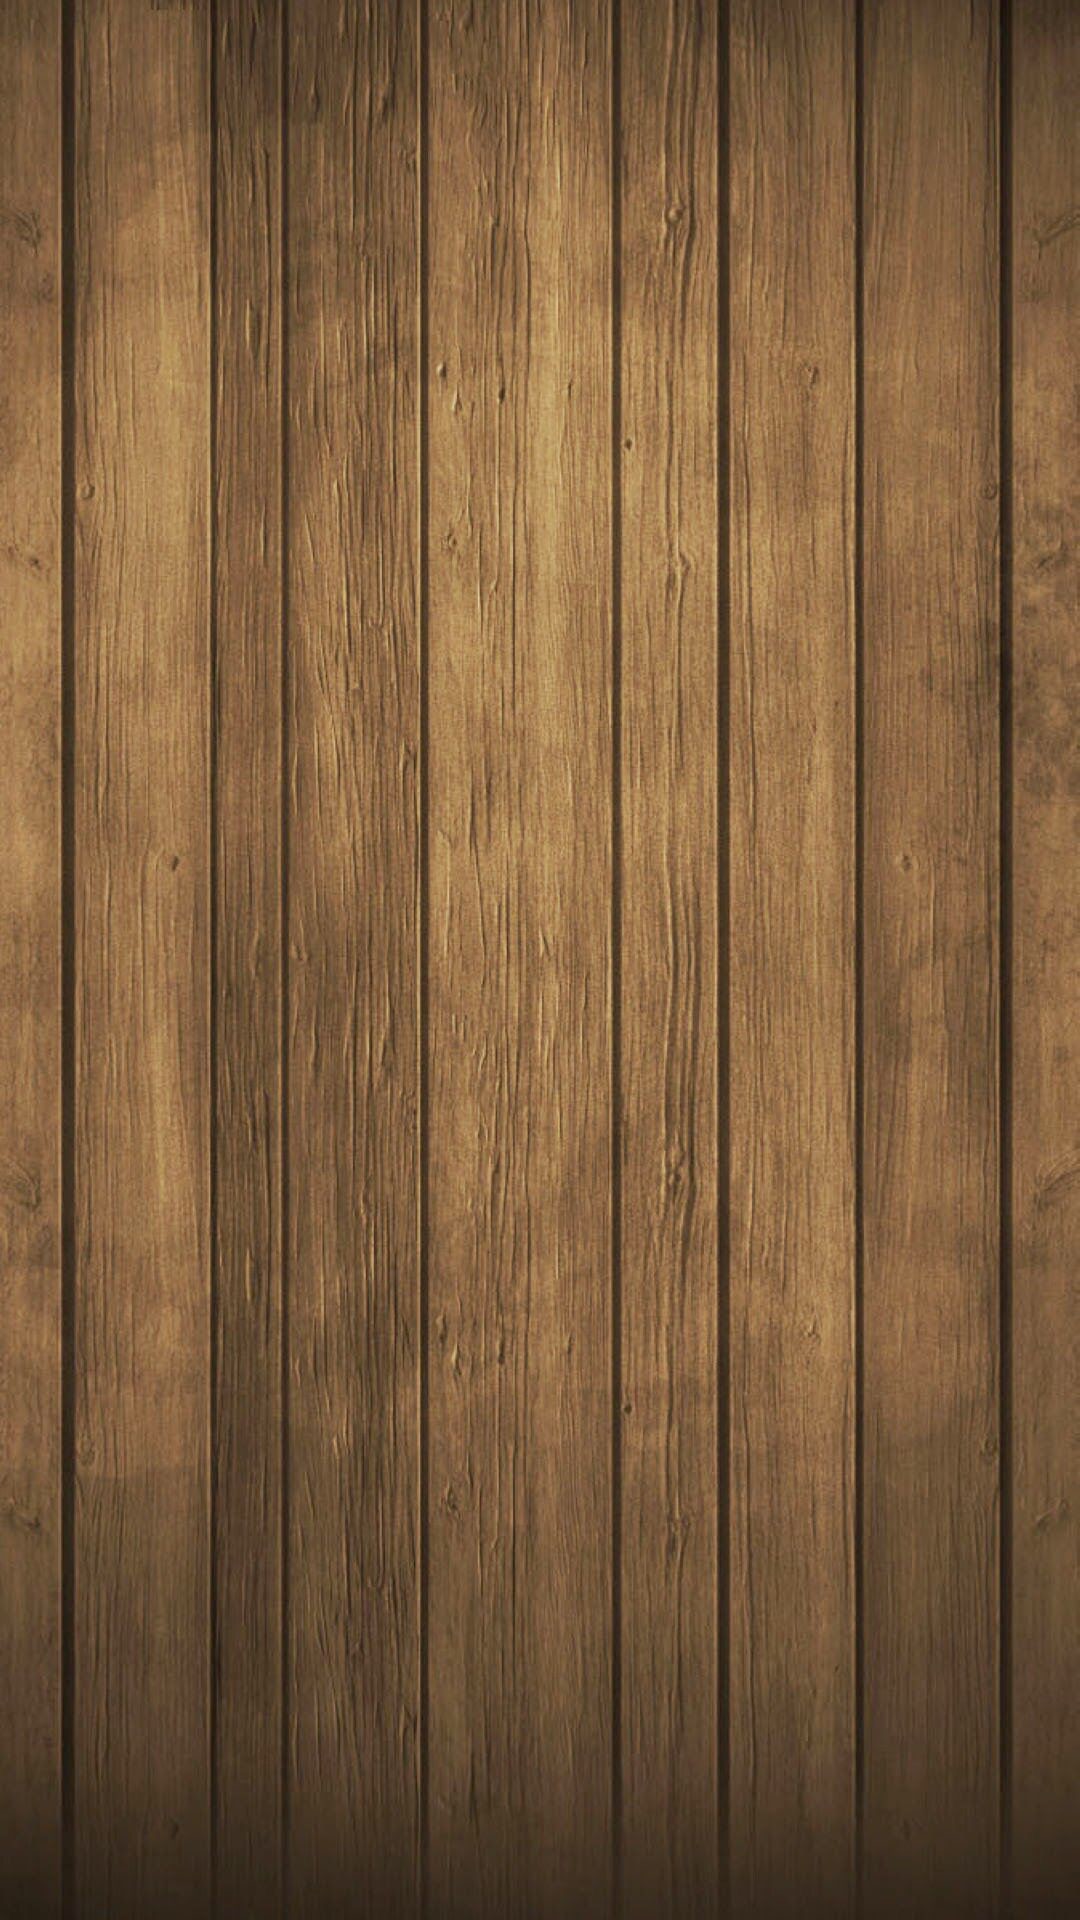 1080x1920 Iphone 6 Plus Wallpaper Â· Cellphone Wallpaper Â· Wallpapers + Wooden  Wallpaper, Black Wallpaper, Colorful Wallpaper, Cool Wallpaper, Mobile  Wallpaper